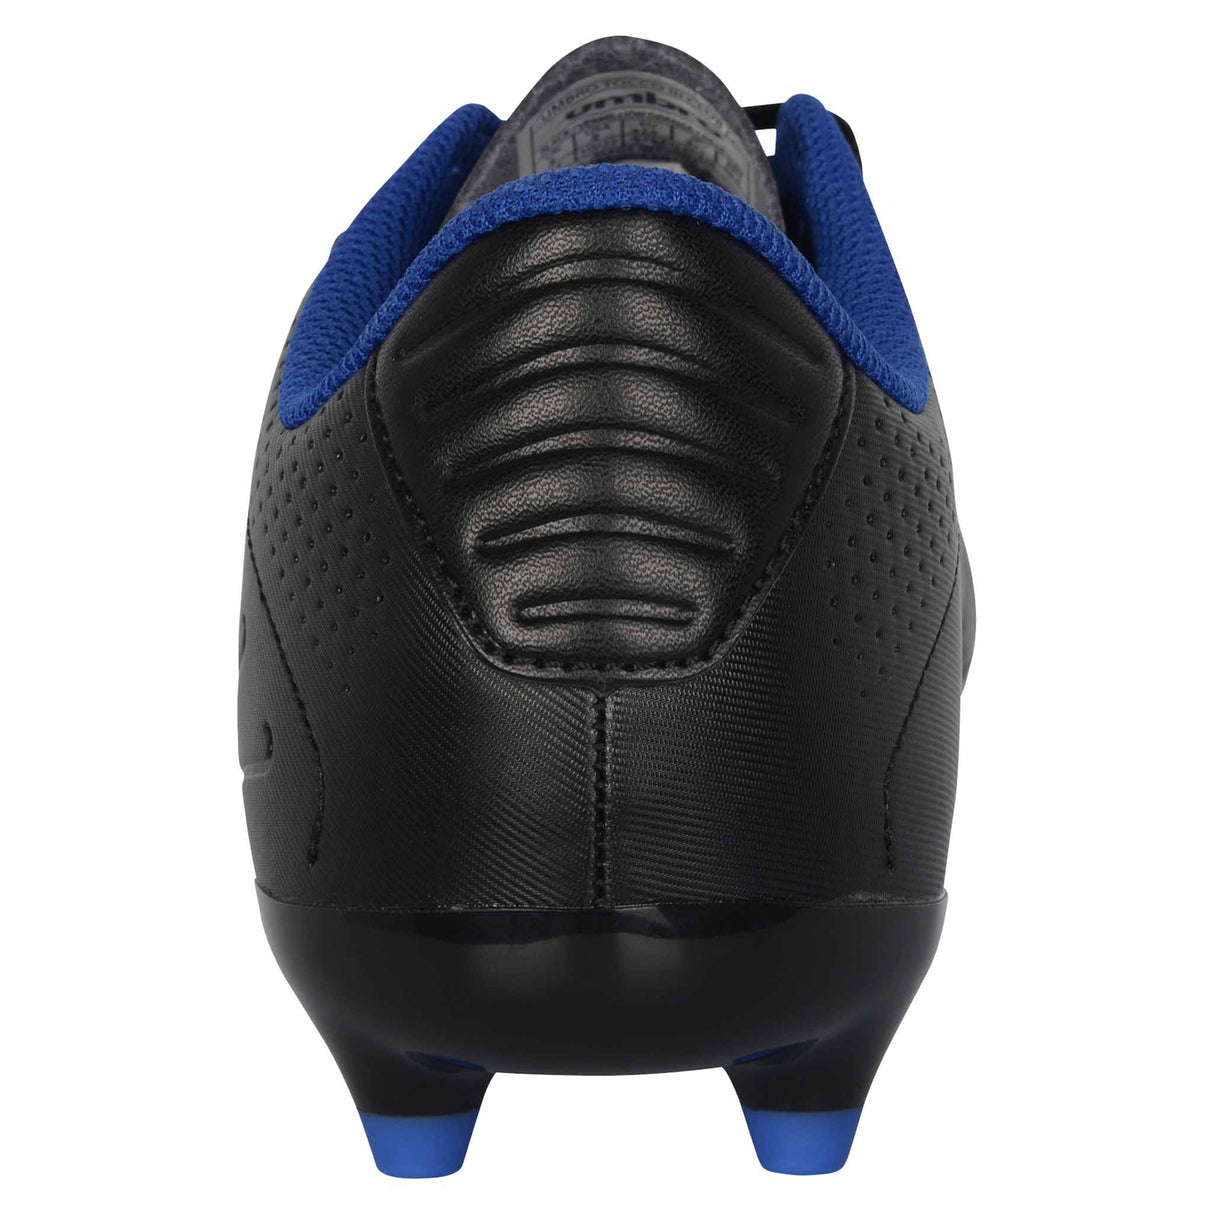 Umbro Tocco 3 Club FG chaussures de soccer adulte - Noir / Orange / Bleu